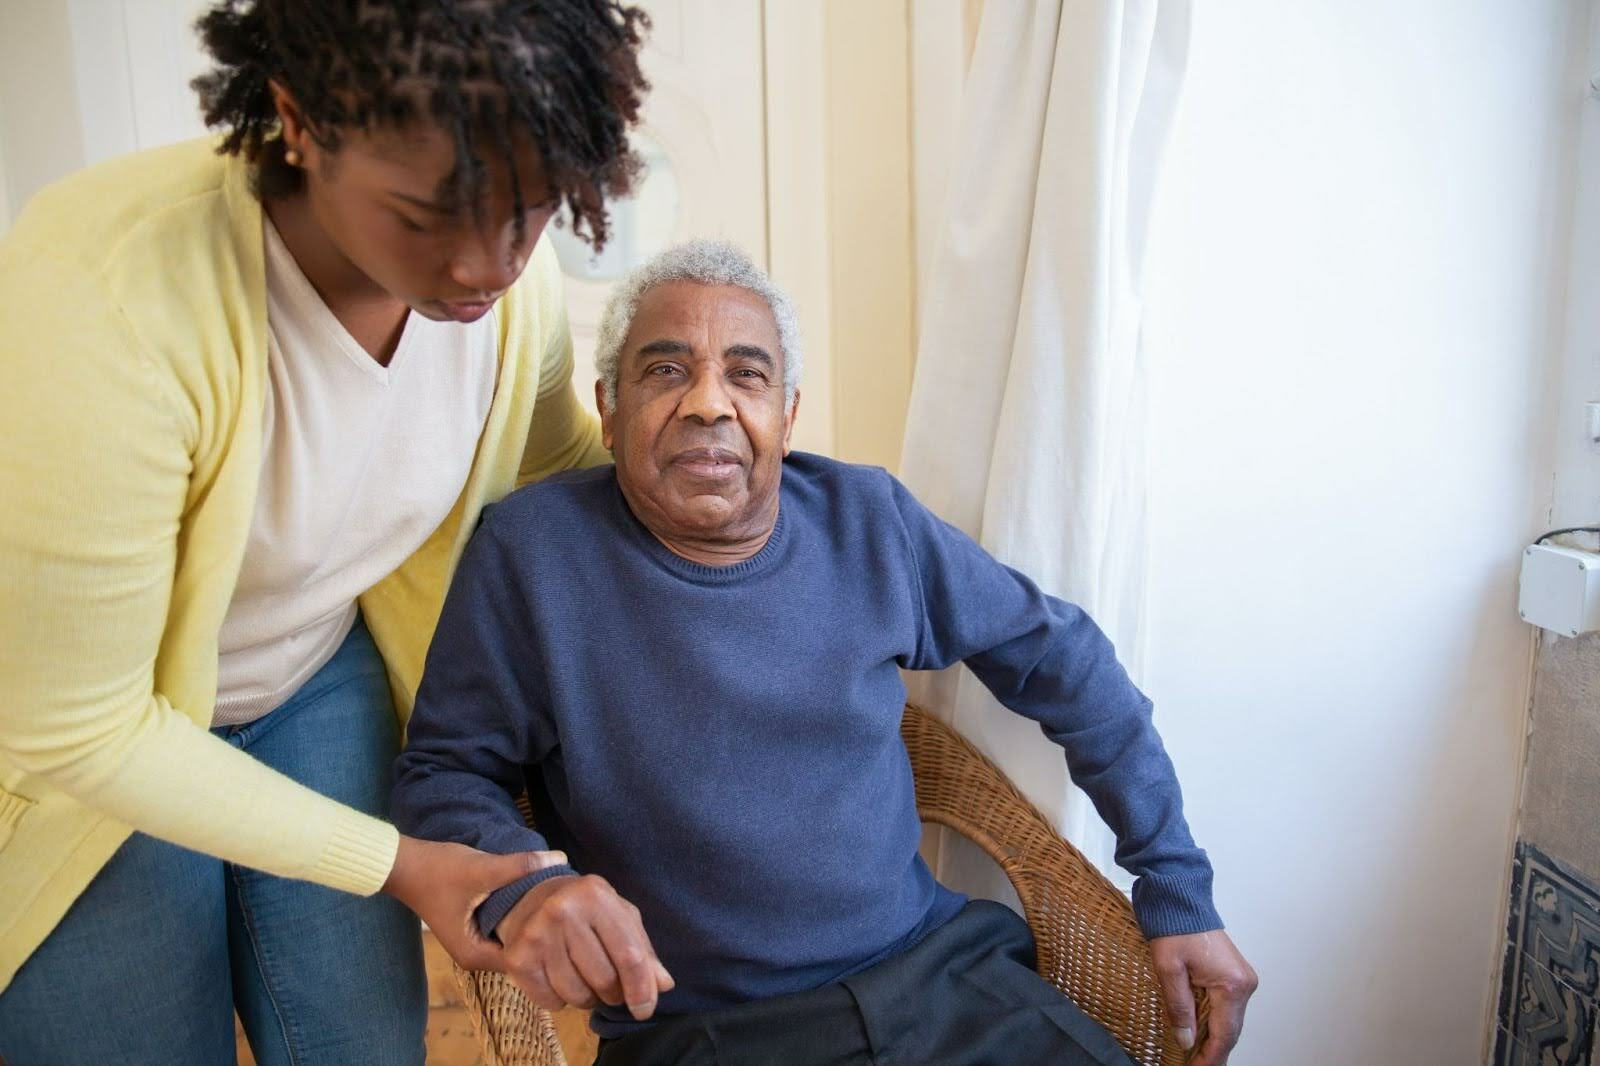 RPM revolutionizing geriatric care